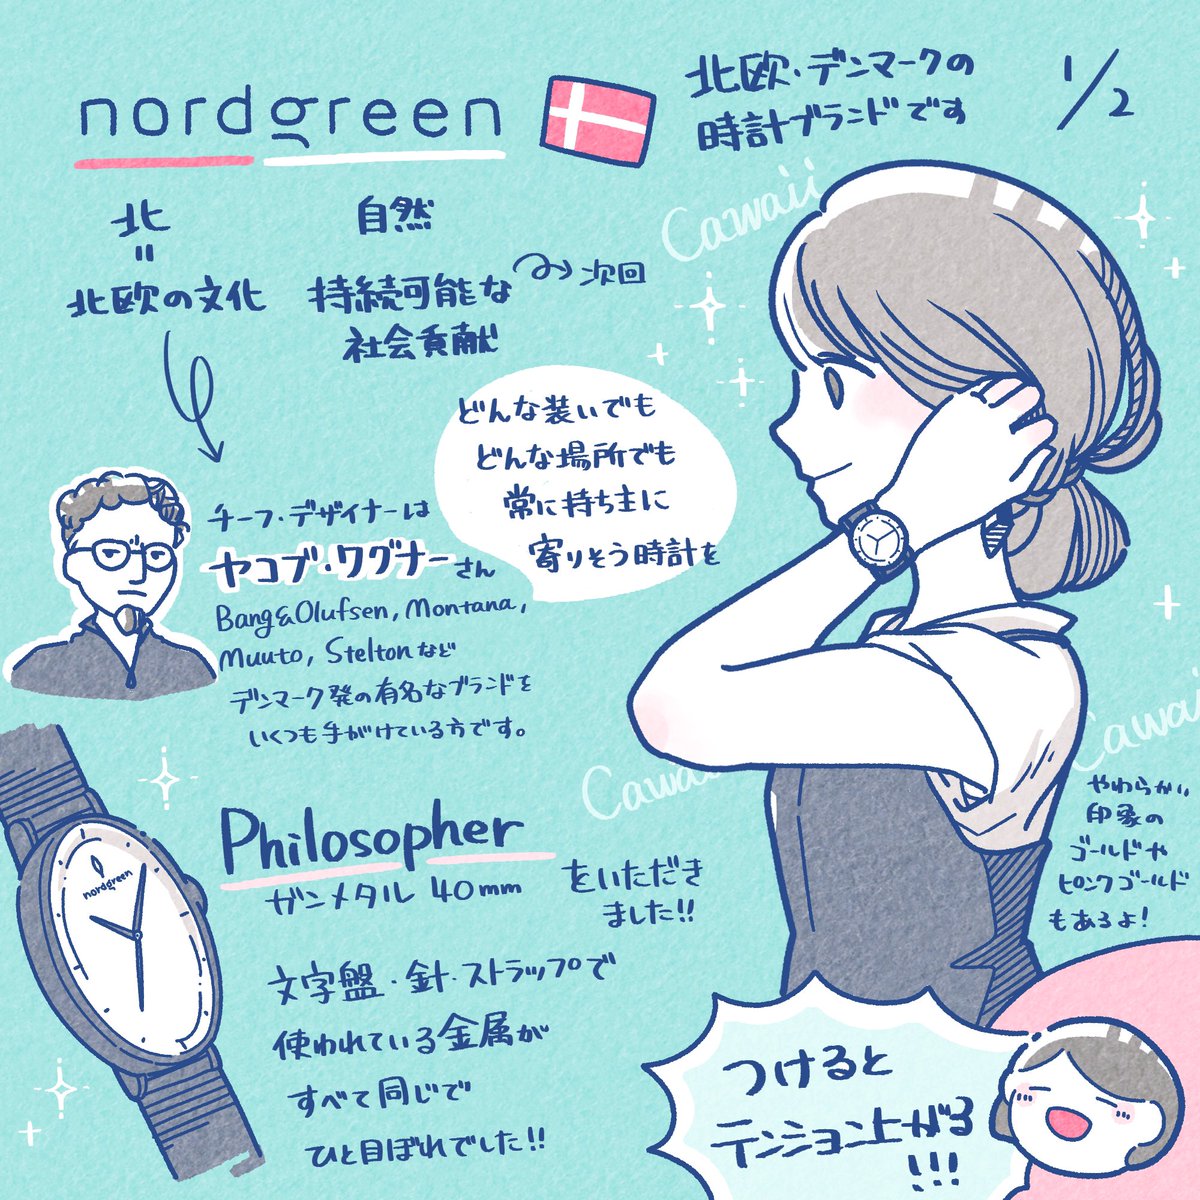 デンマークの時計ブランド Nordgreen( @NordgreenSocial )さんに腕時計をいただきました✨在宅だけど、仕事ができそうな気するから付けてテンションあげてます?

2回にわたってブランドの魅力をご紹介します!#Nordgreen #時計 #PR 